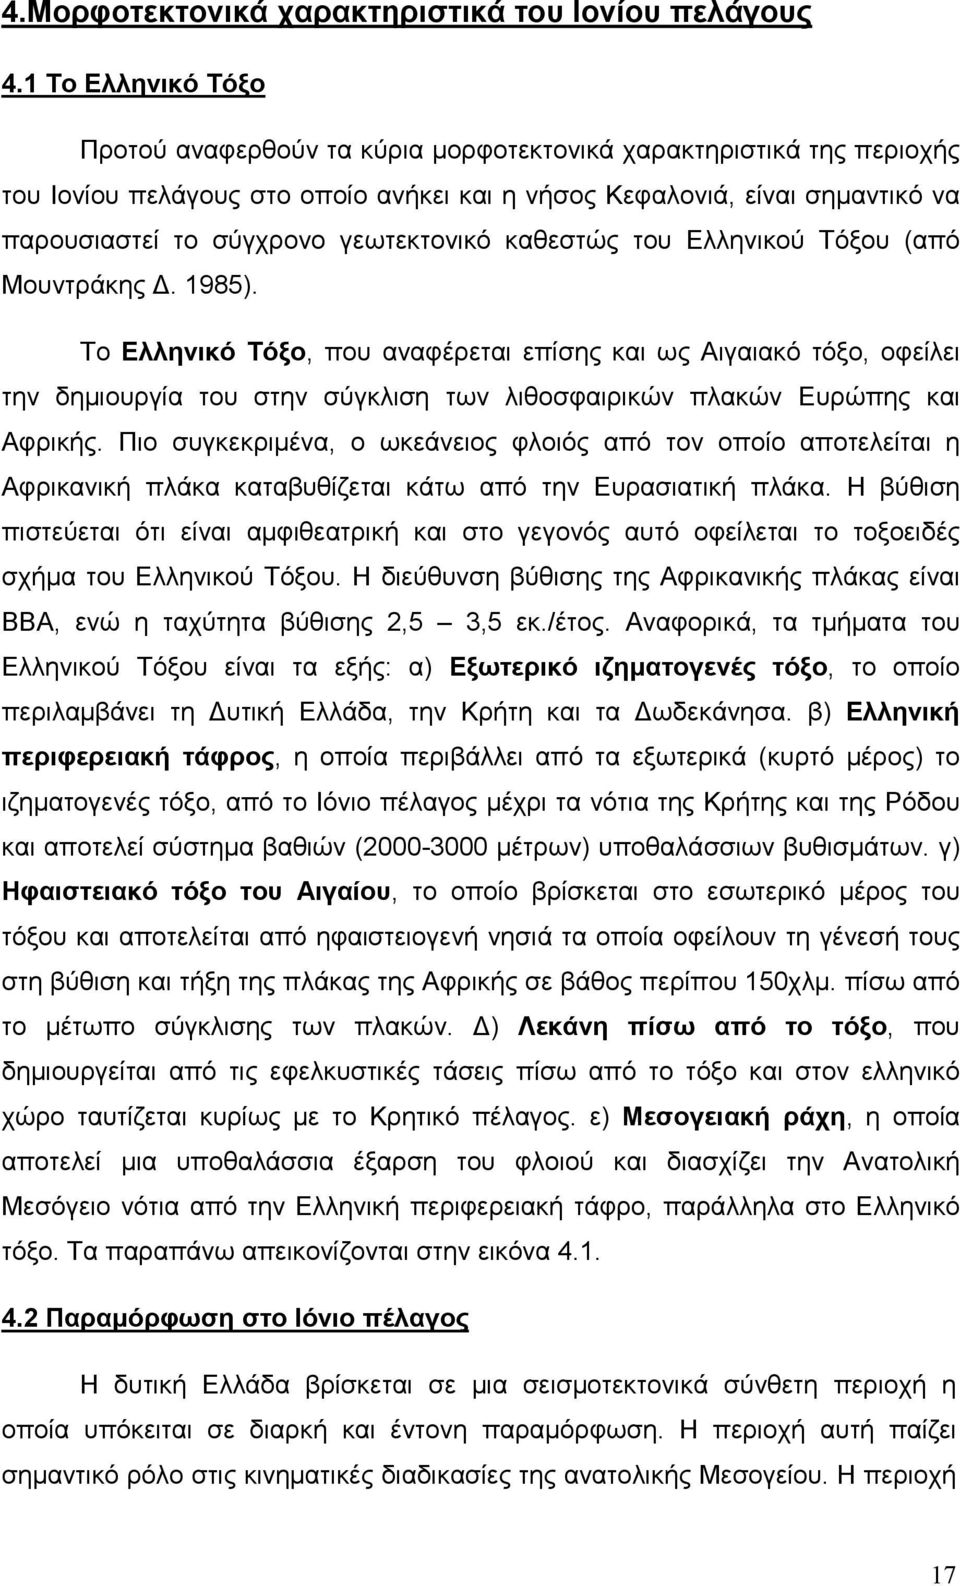 γεωτεκτονικό καθεστώς του Ελληνικού Τόξου (από Μουντράκης. 1985).